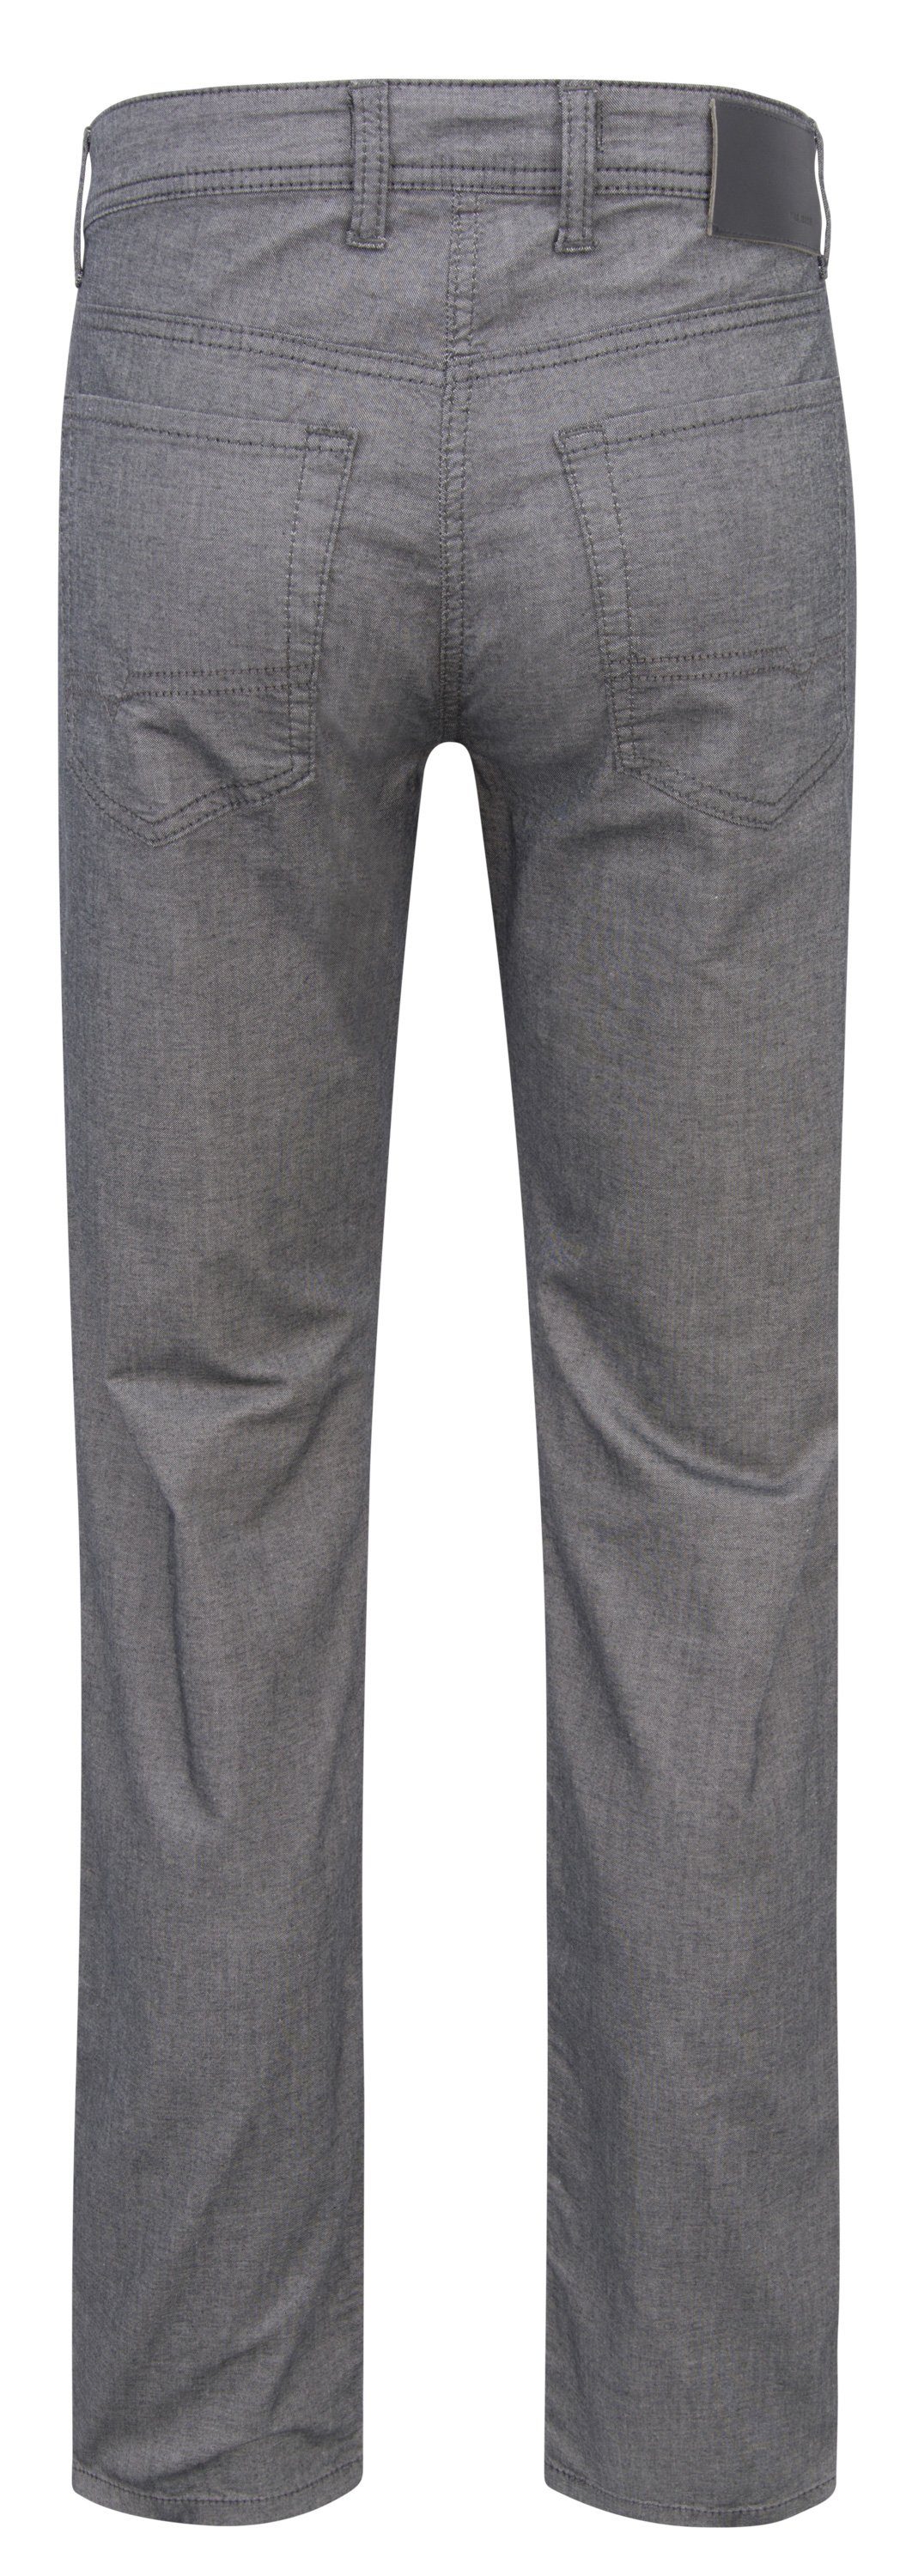 MAC 5-Pocket-Jeans MAC ARNE grey 077 stone 077 stone grey 0500-91-0609L